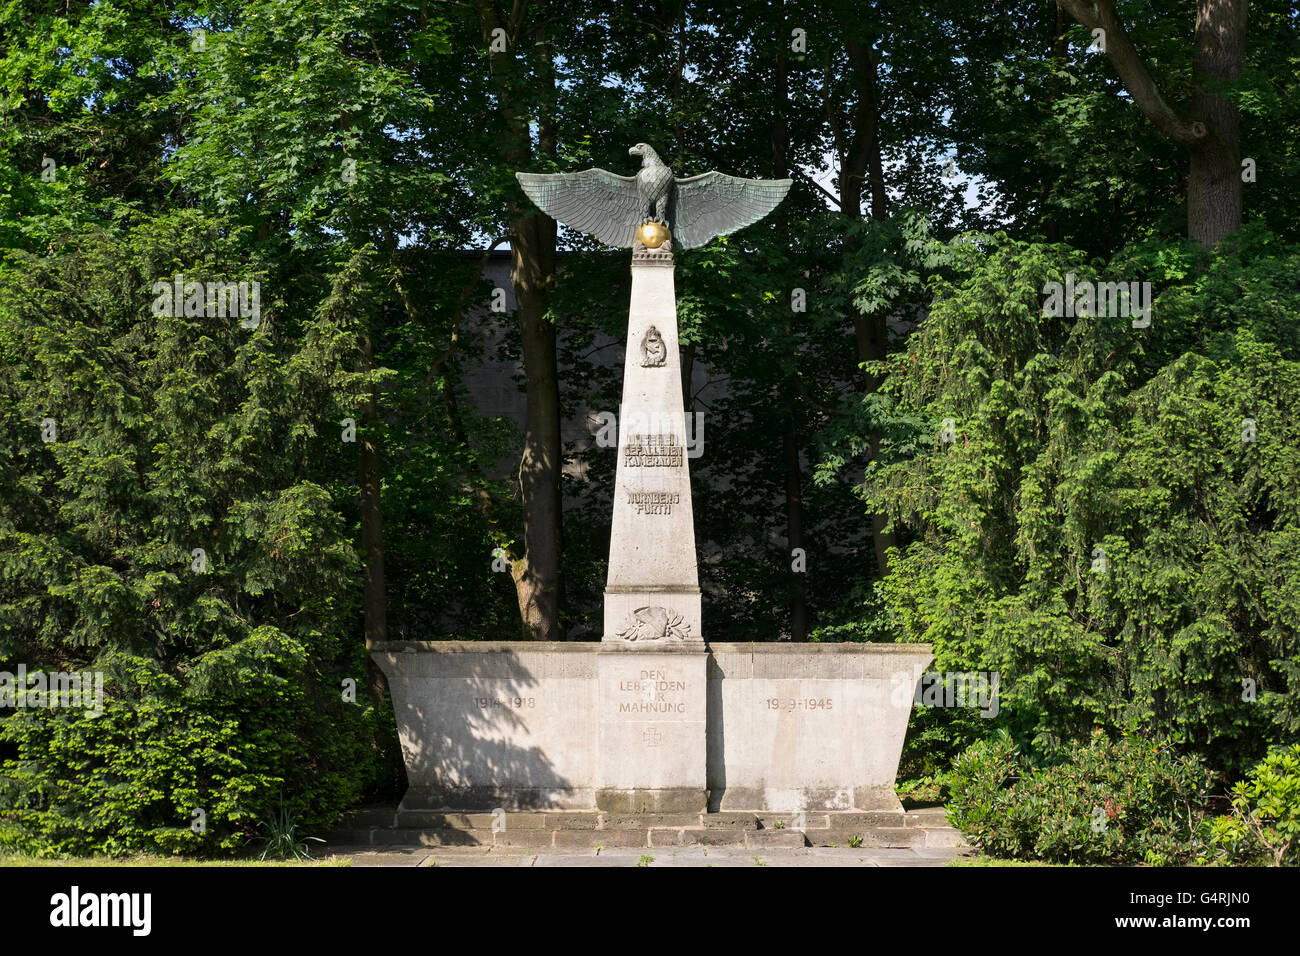 Aviator Monument commemorating pilots killed in action of World War II, Luitpoldhain, Reichsparteitagsgelände Stock Photo